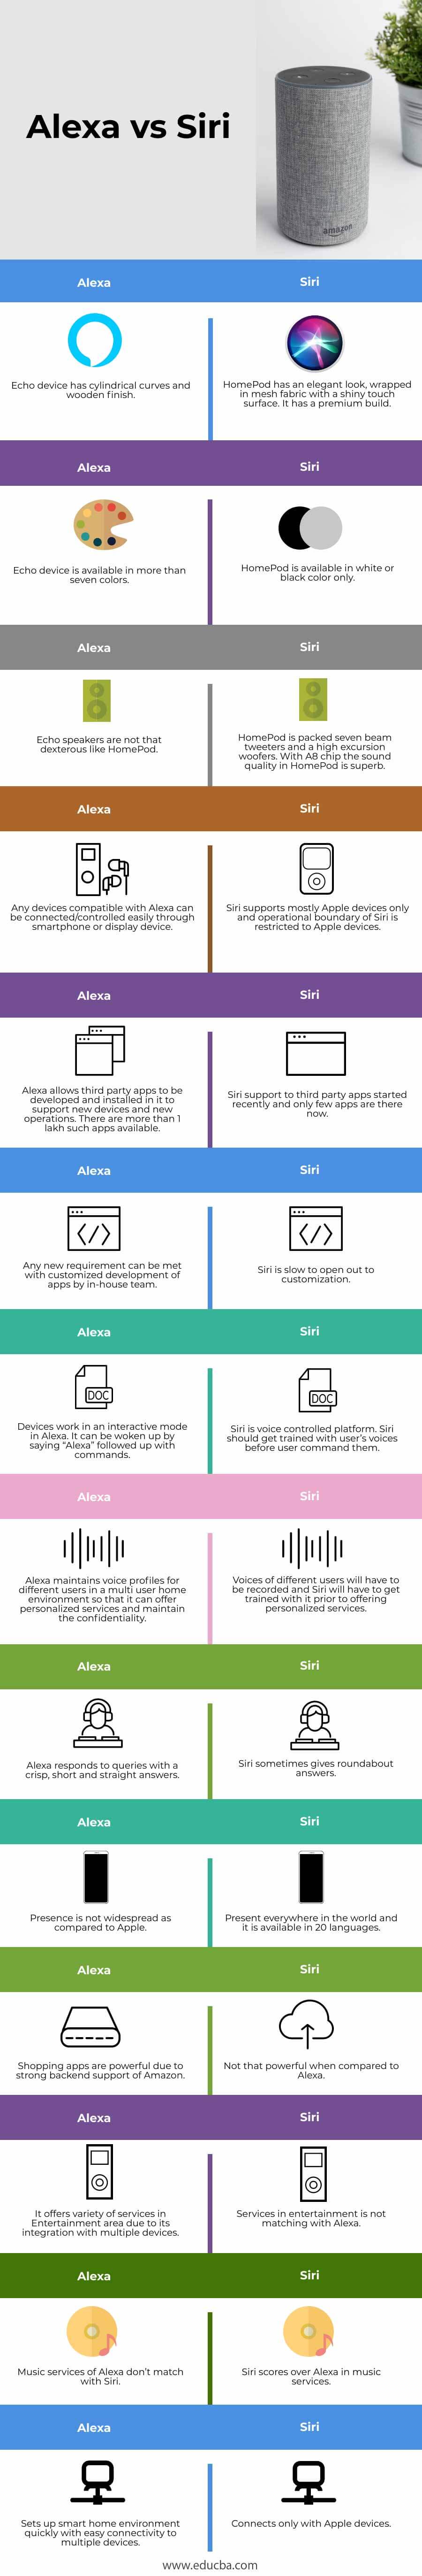 Alexa-vs-Siri-info